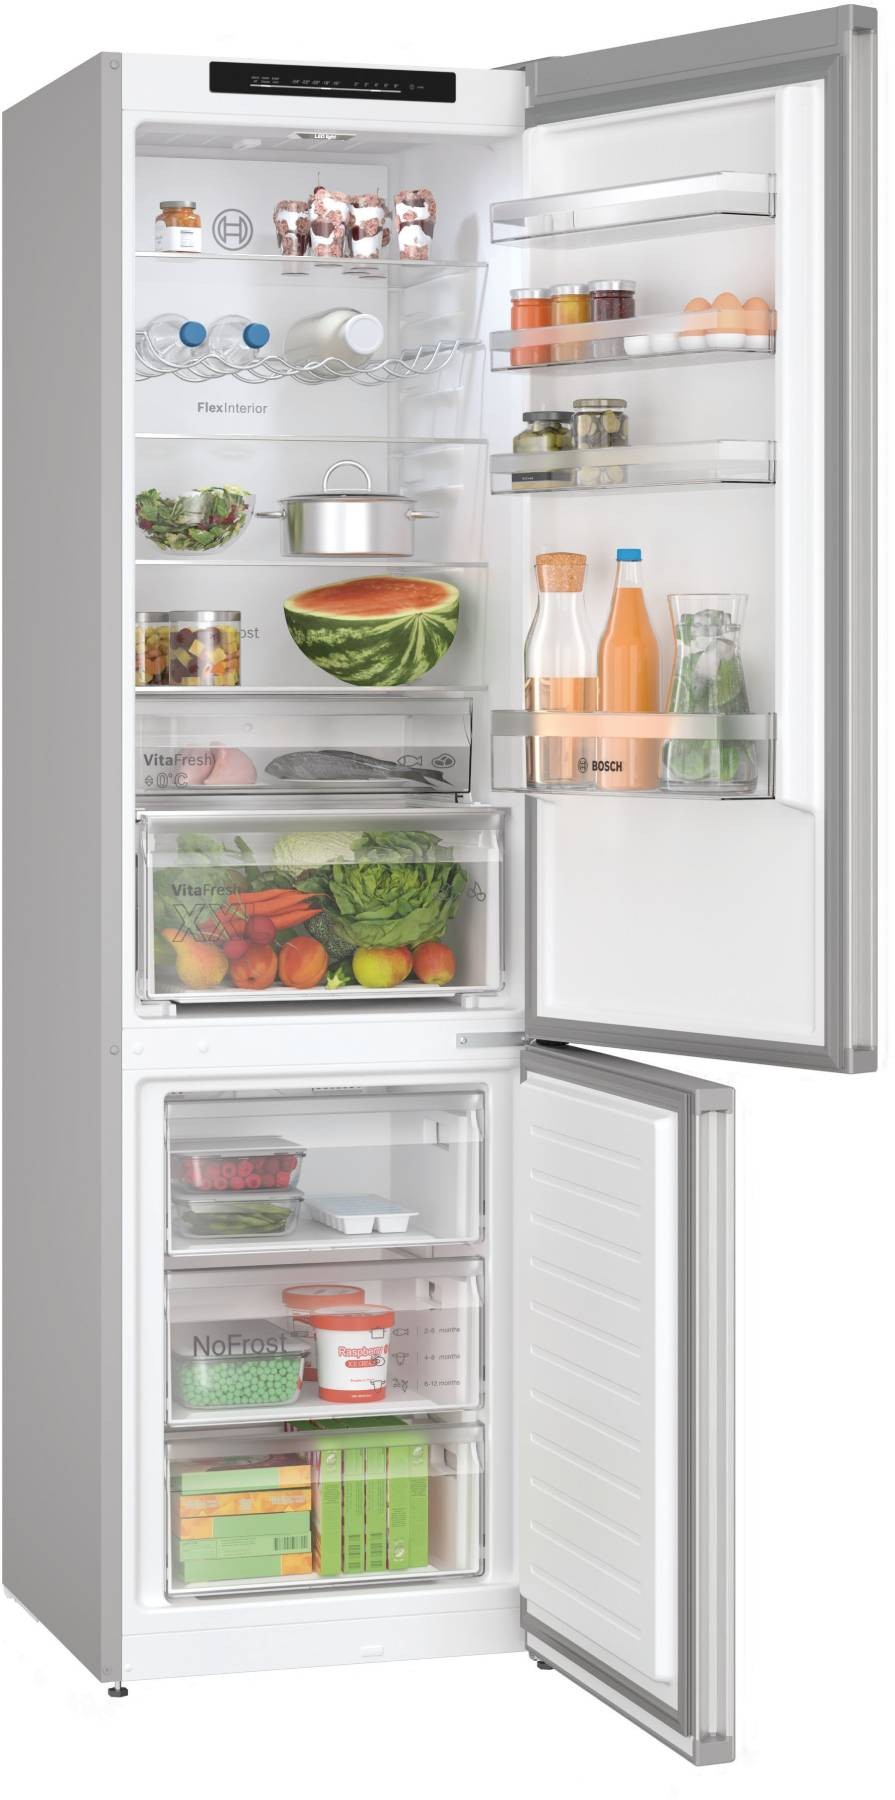 BOSCH Réfrigérateur congélateur bas Série 4 Twin No Frost 363L Inox - KGN392LDF